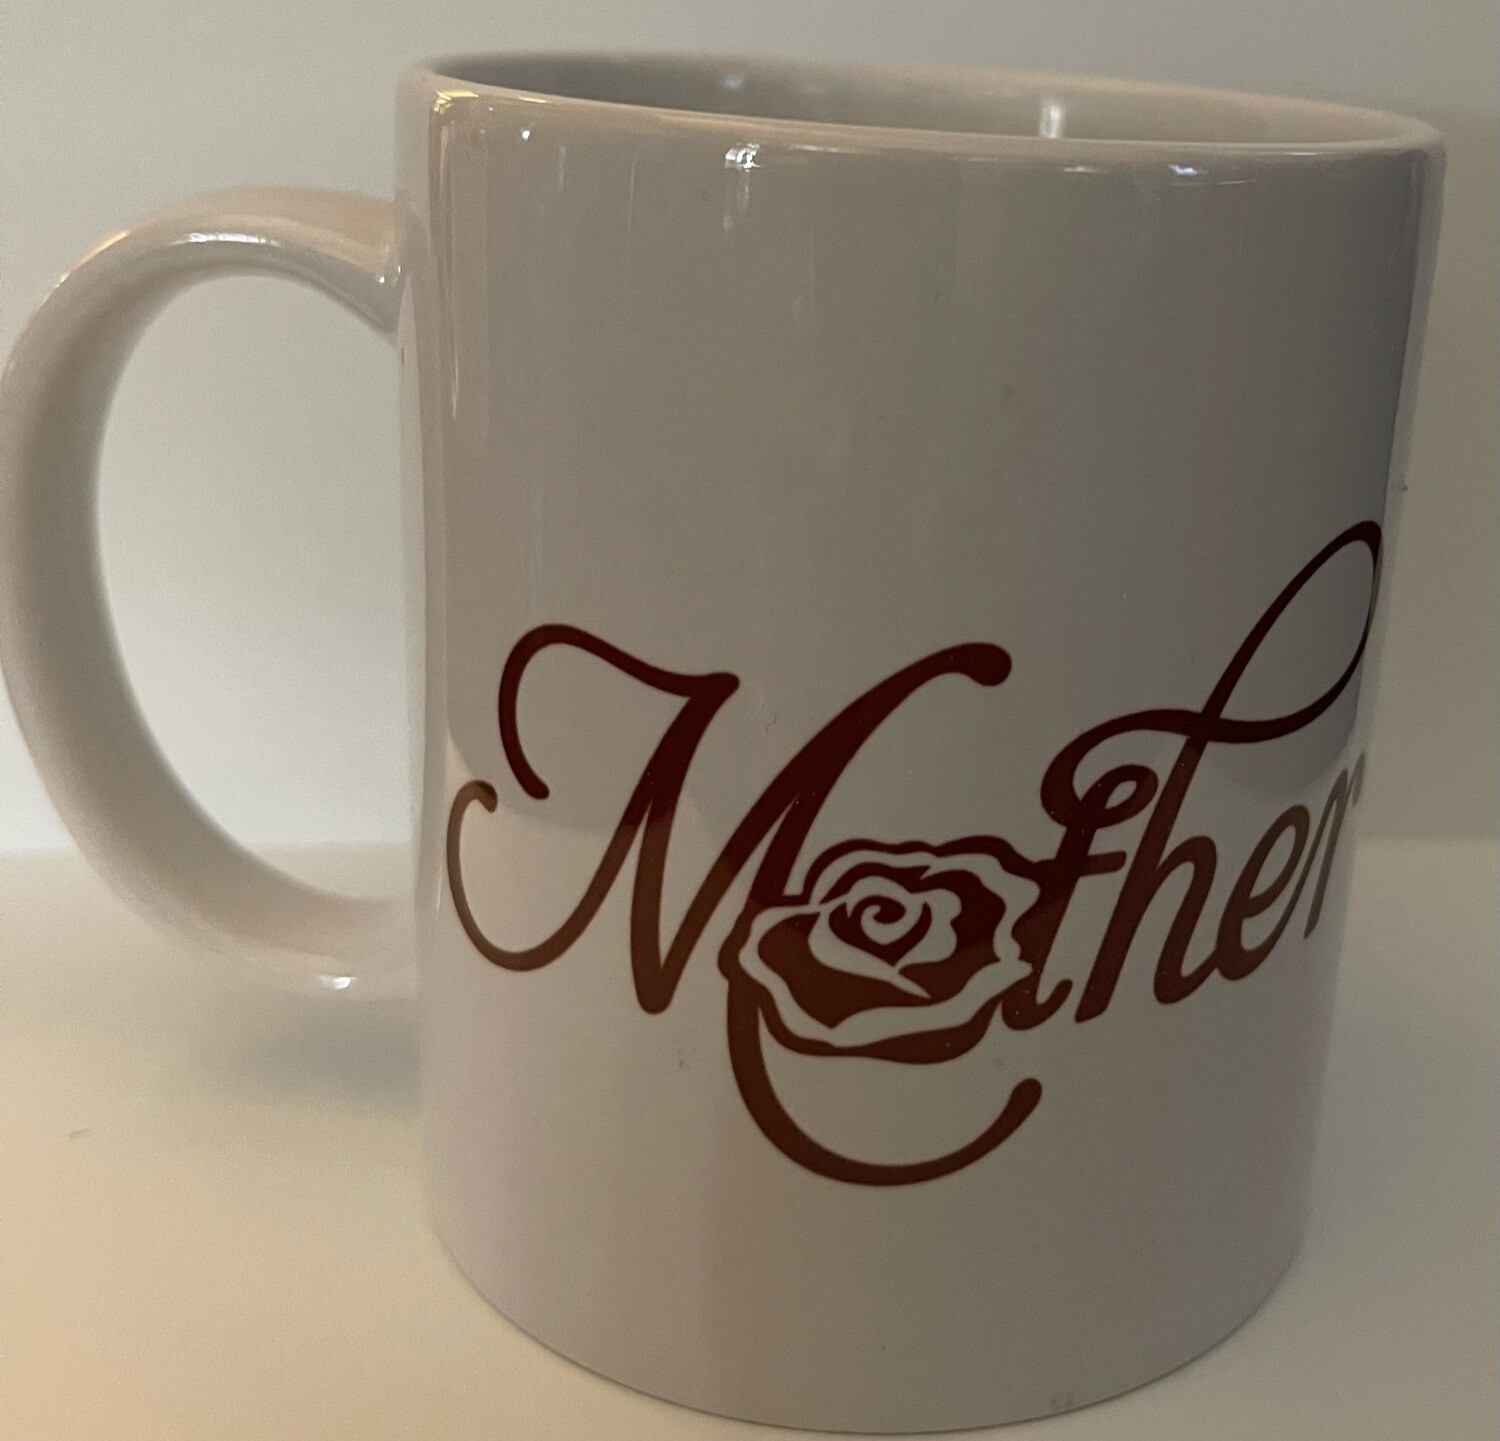 A Mug for Mom